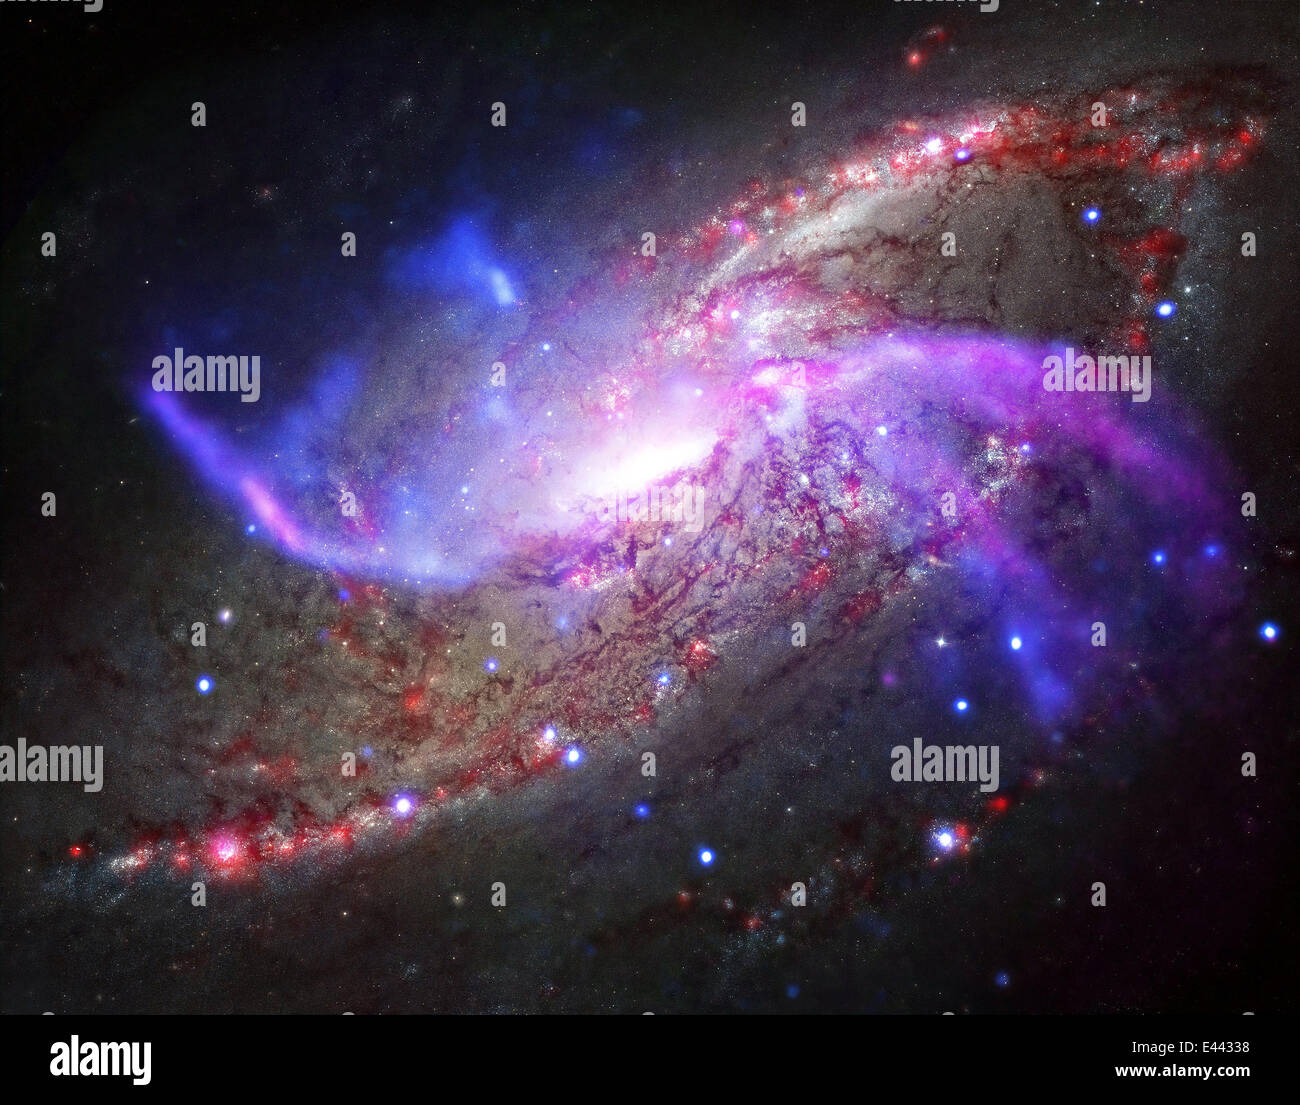 Un feu d'artifice galactique dans NGC 4258, également connu sous le nom de M106, une galaxie spirale comme notre Voie Lactée impliquant un trou noir géant, ondes de choc et de vastes réservoirs de gaz capturés par l'espace Chandra X-Ray Telescope 2 juillet 2014. Banque D'Images